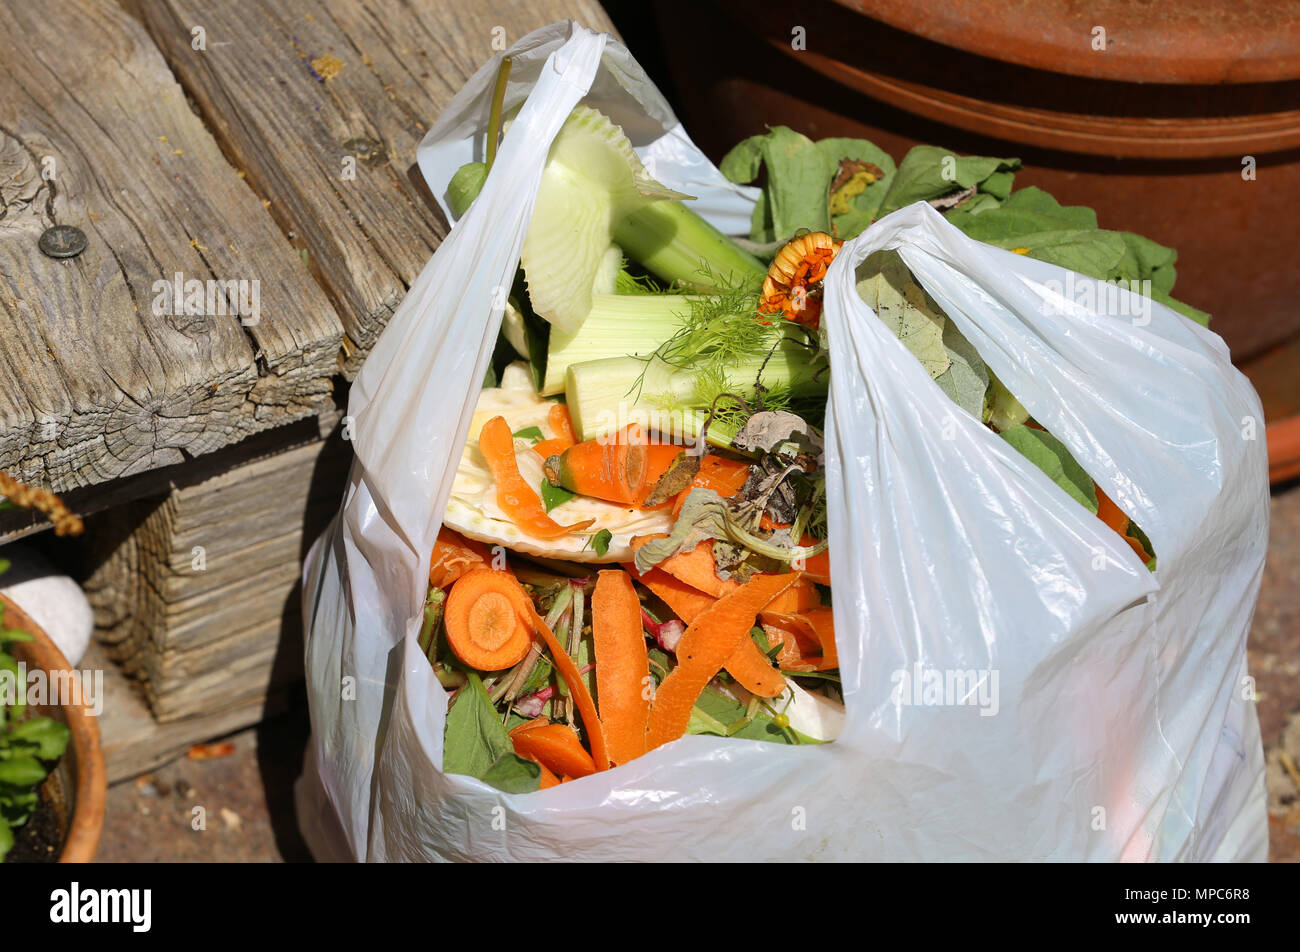 09 Mai 2018, Deutschland, Kaufbeuren: Grenn Abfall wird in einem Plastikbeutel außerhalb eines Hauses. Foto: Karl-Josef Hildenbrand/dpa Stockfoto